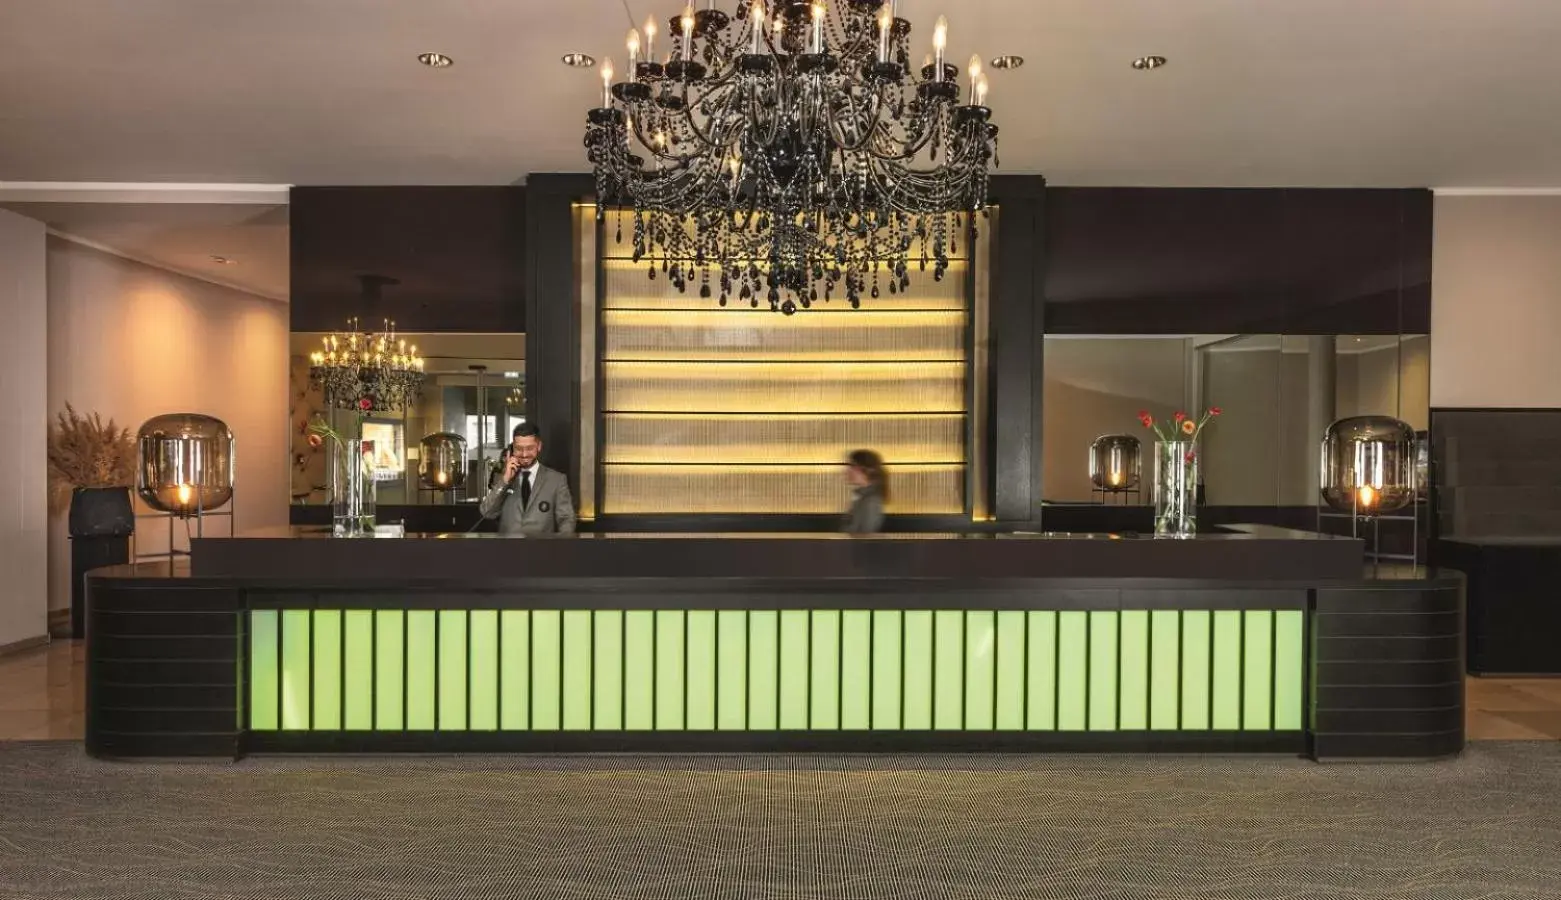 Lobby or reception in Hotel Maximilian’s